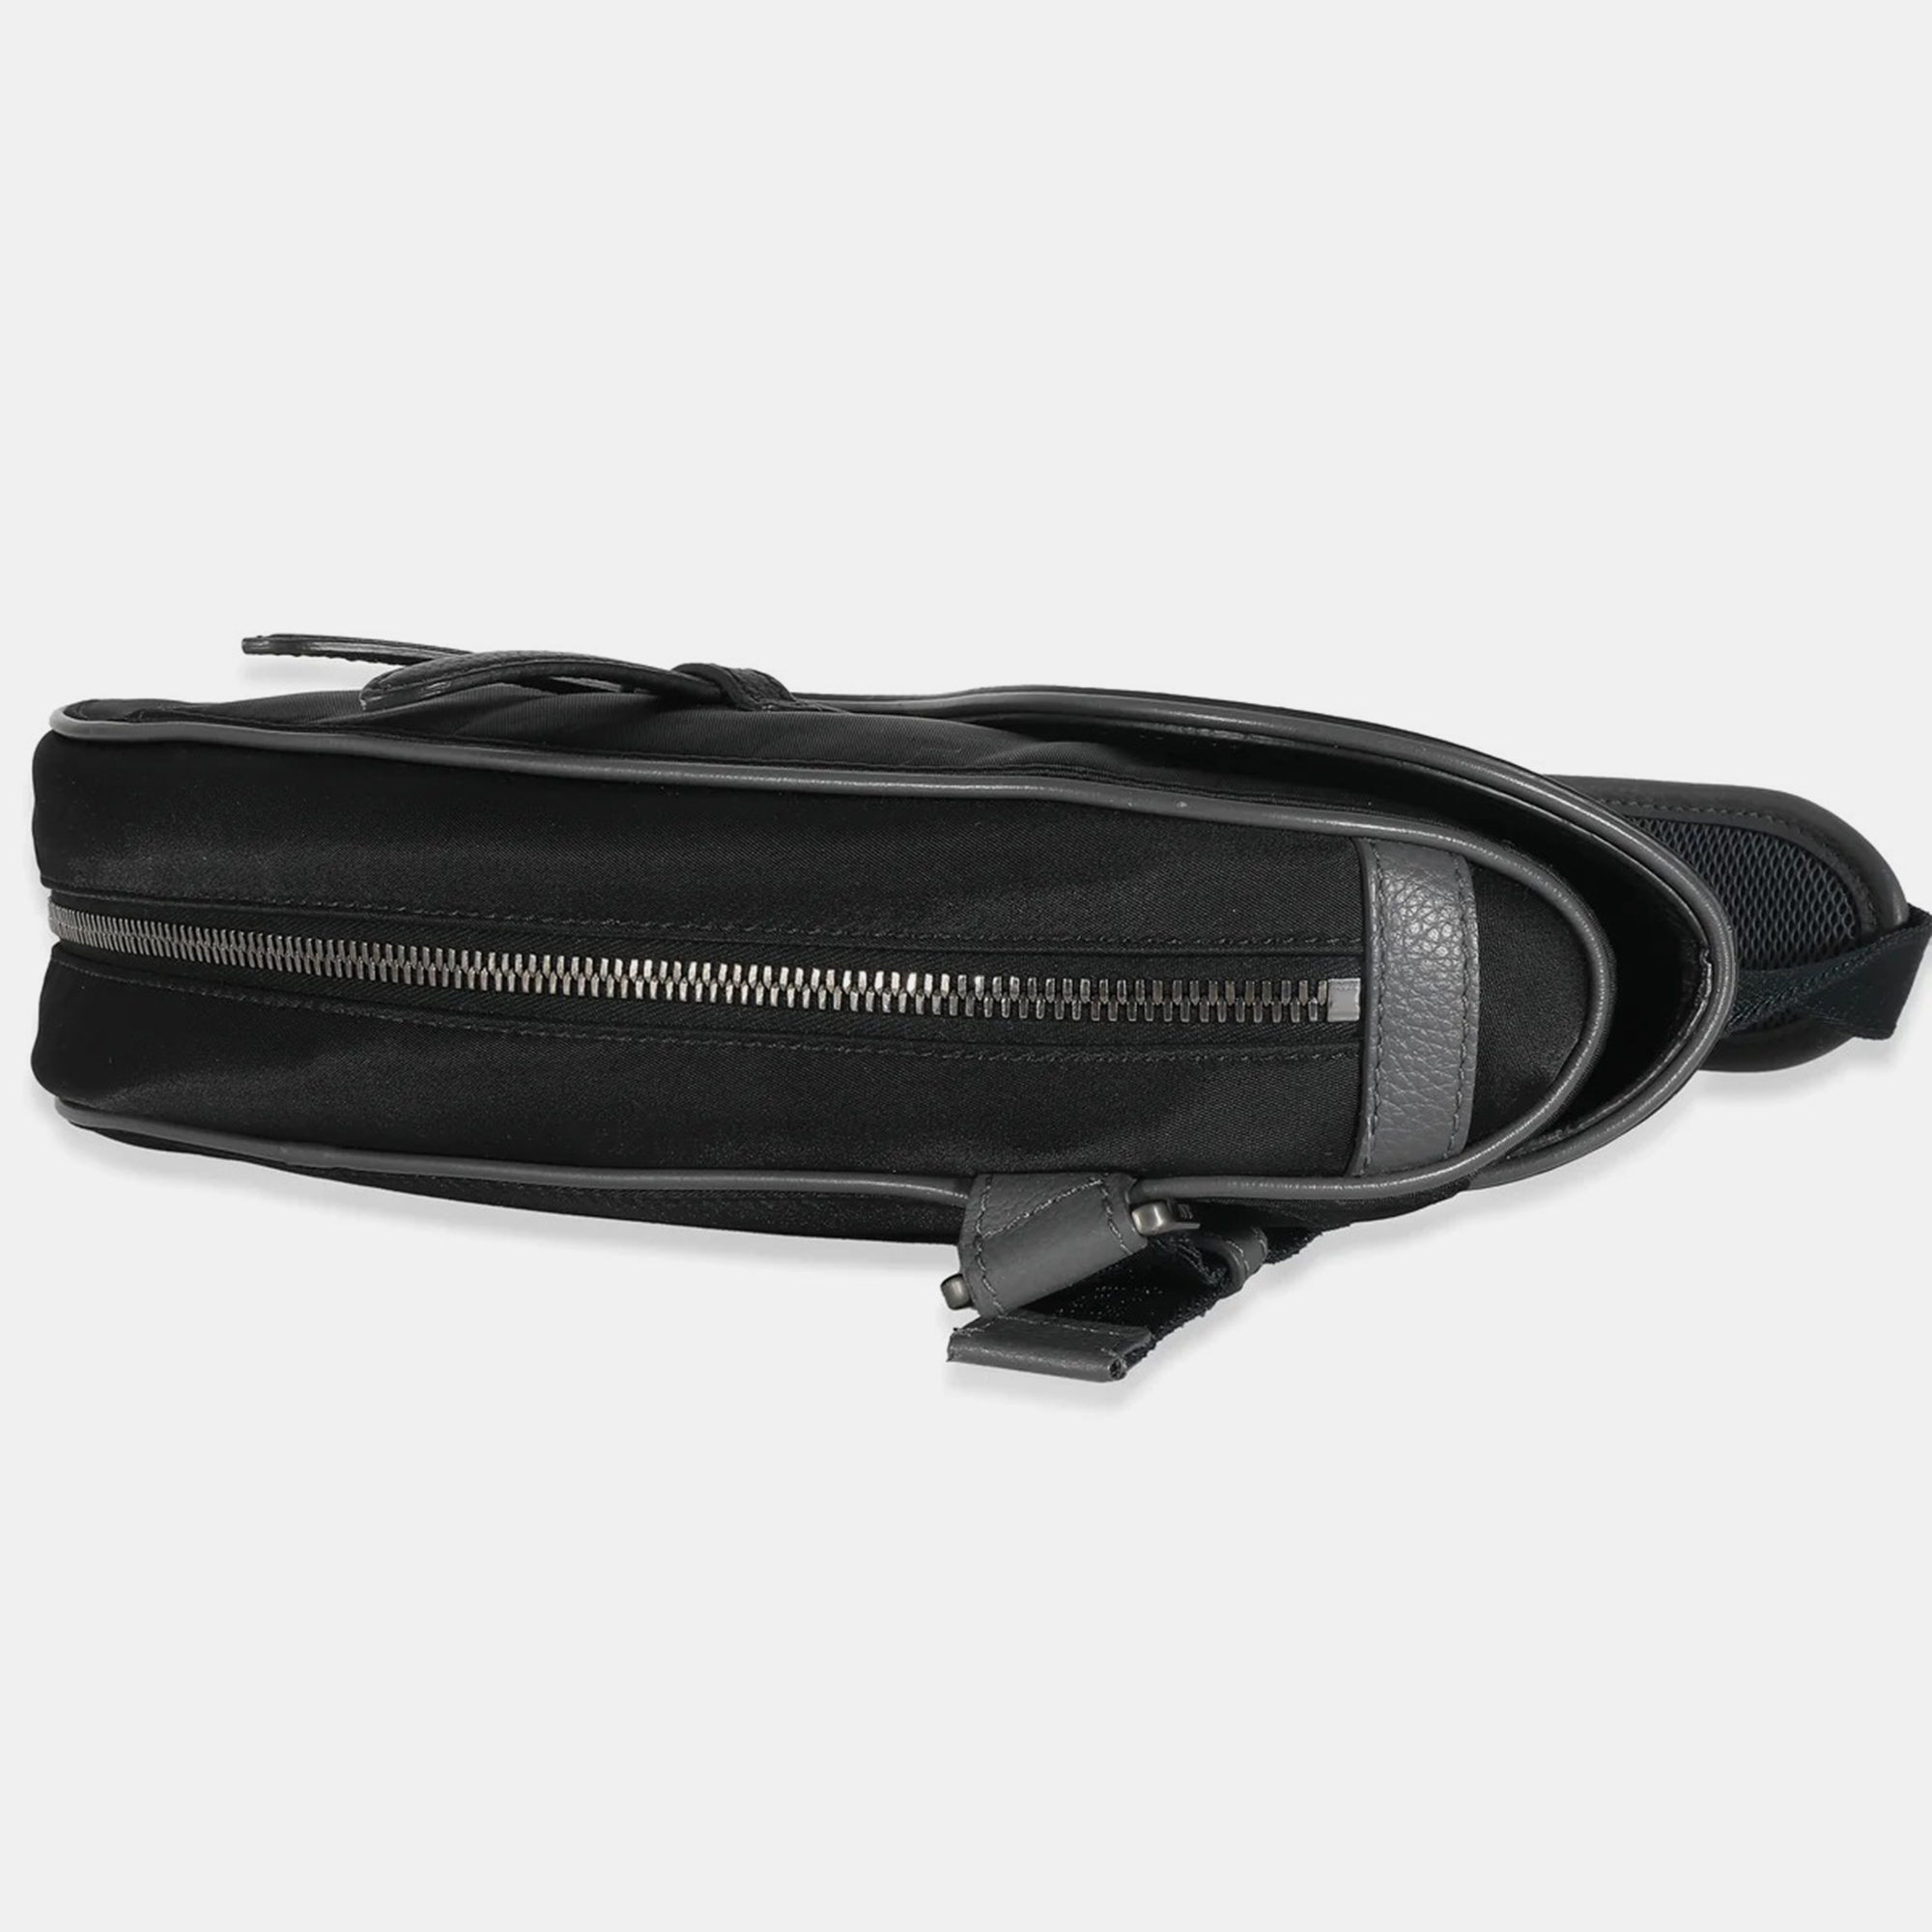 Dior Black Leather Saddle Shoulder Bag